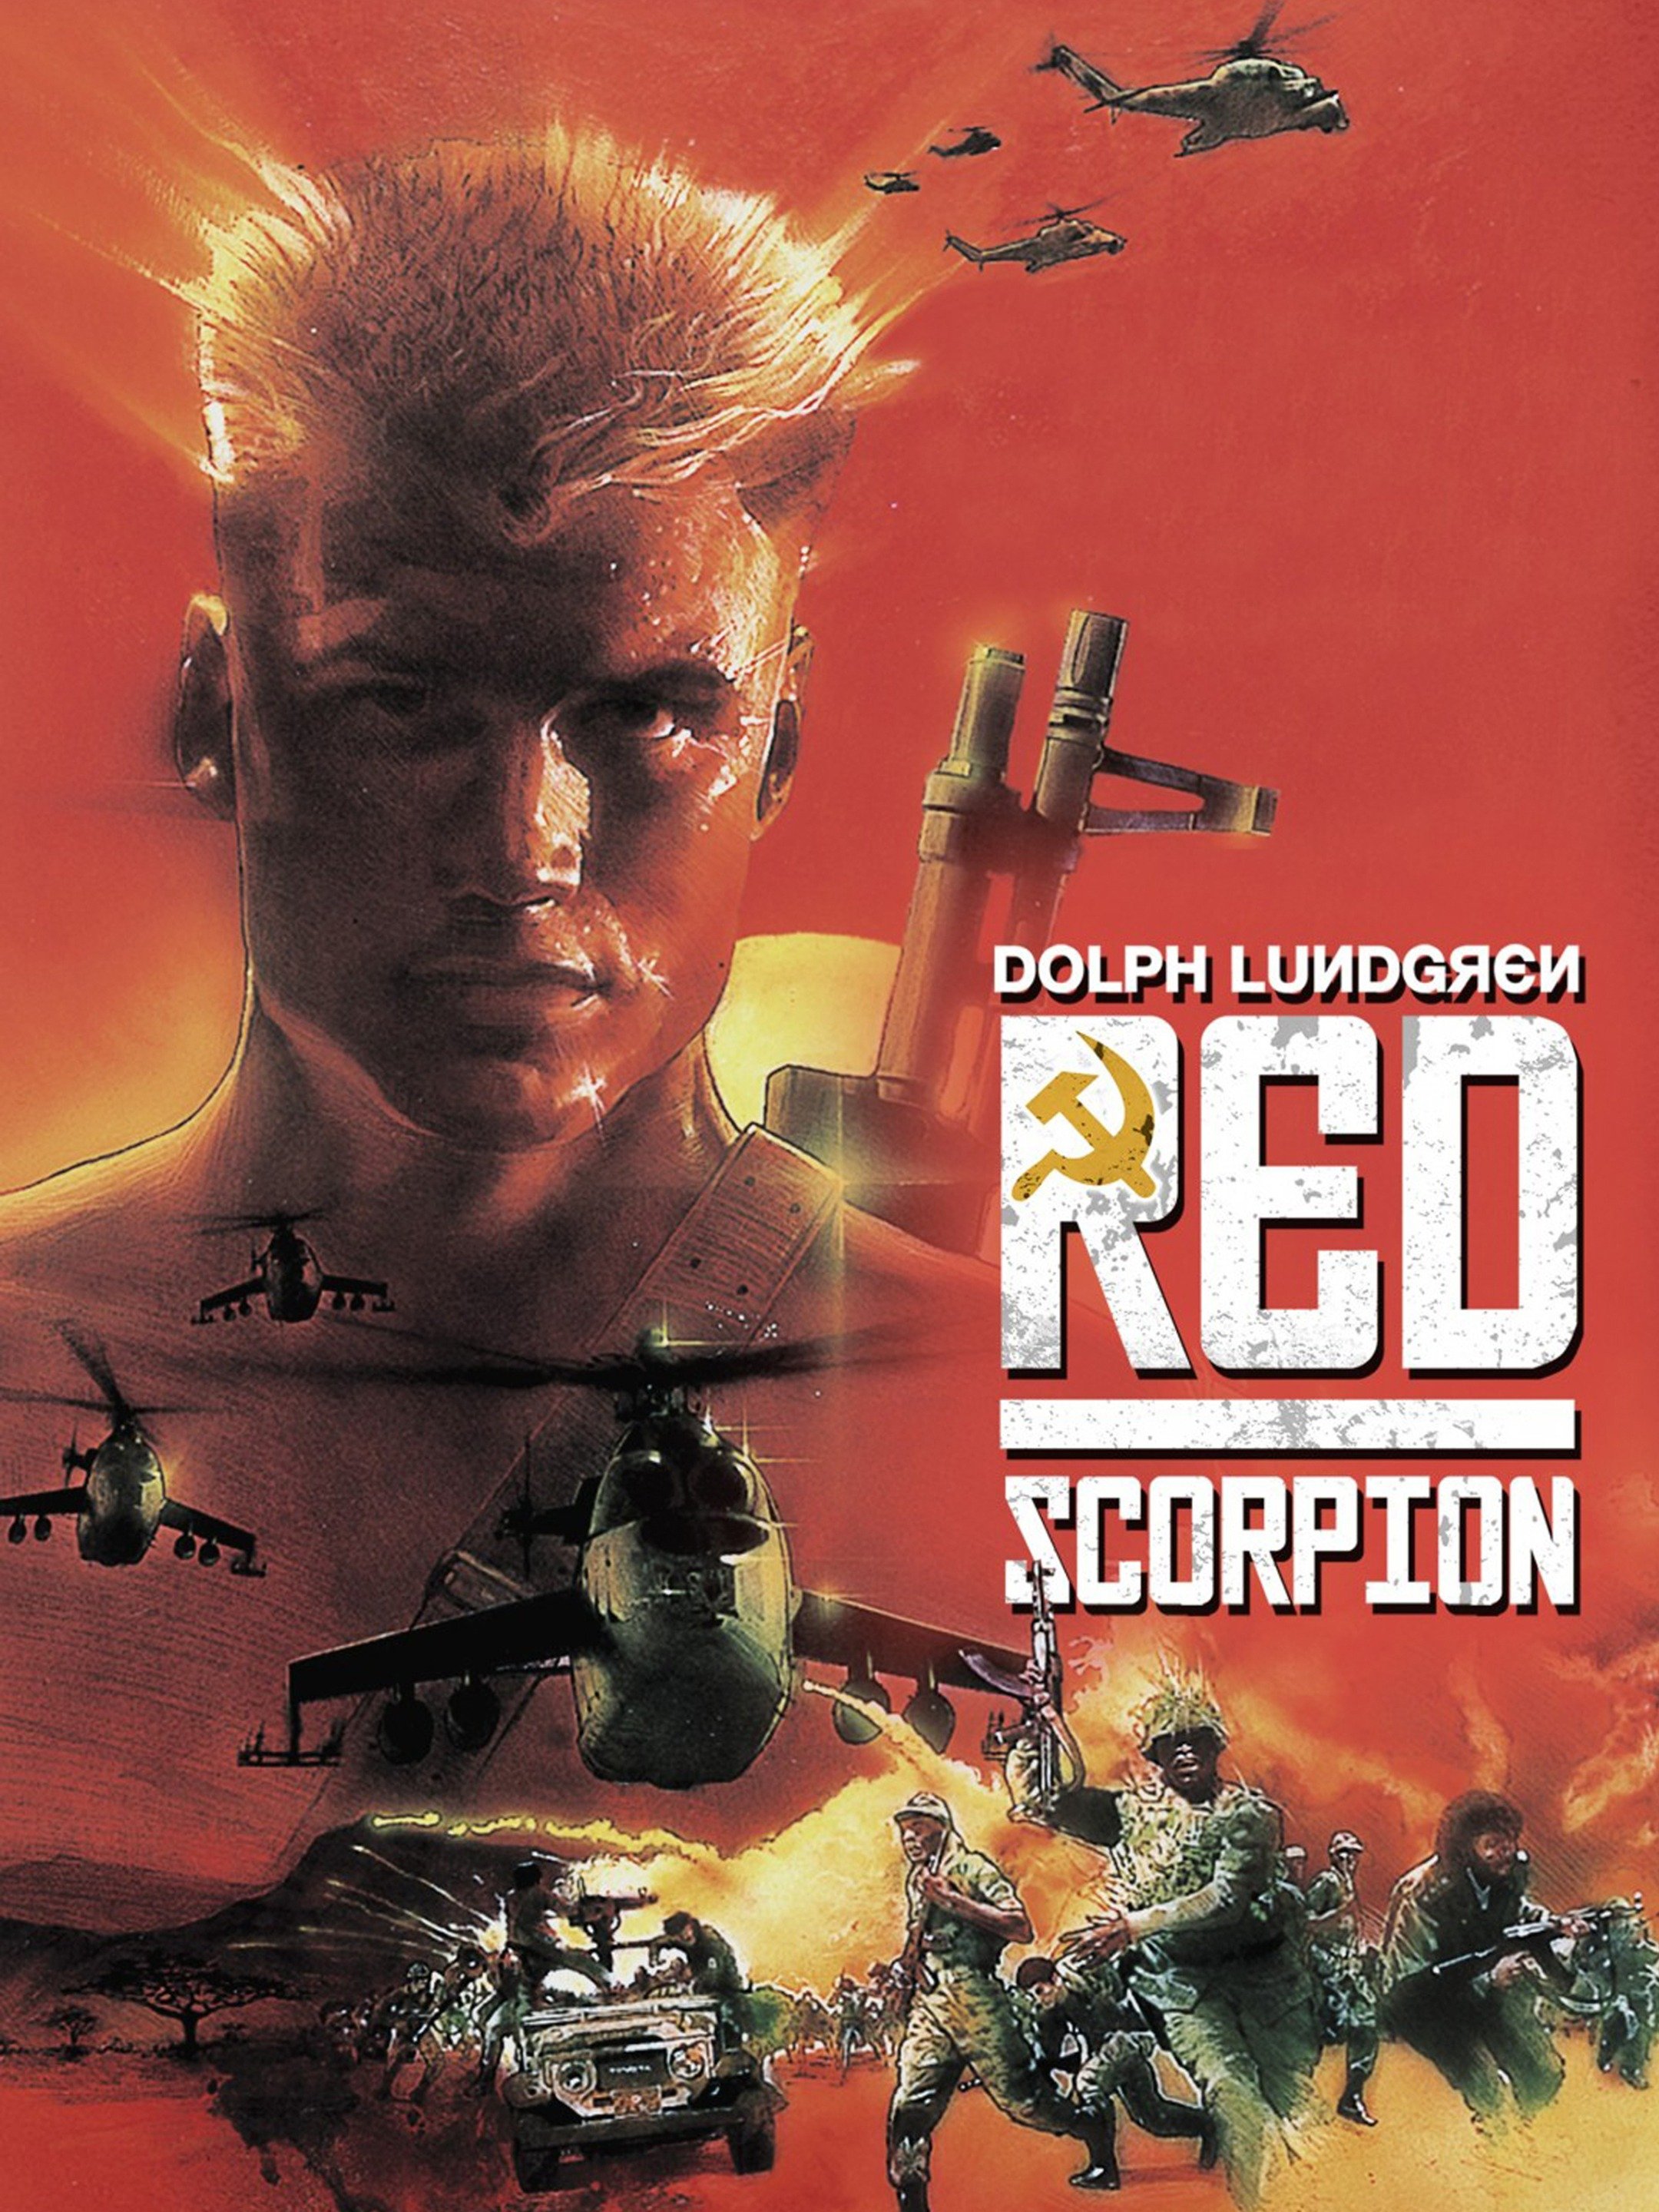 Дольф Лундгрен красный Скорпион плакат